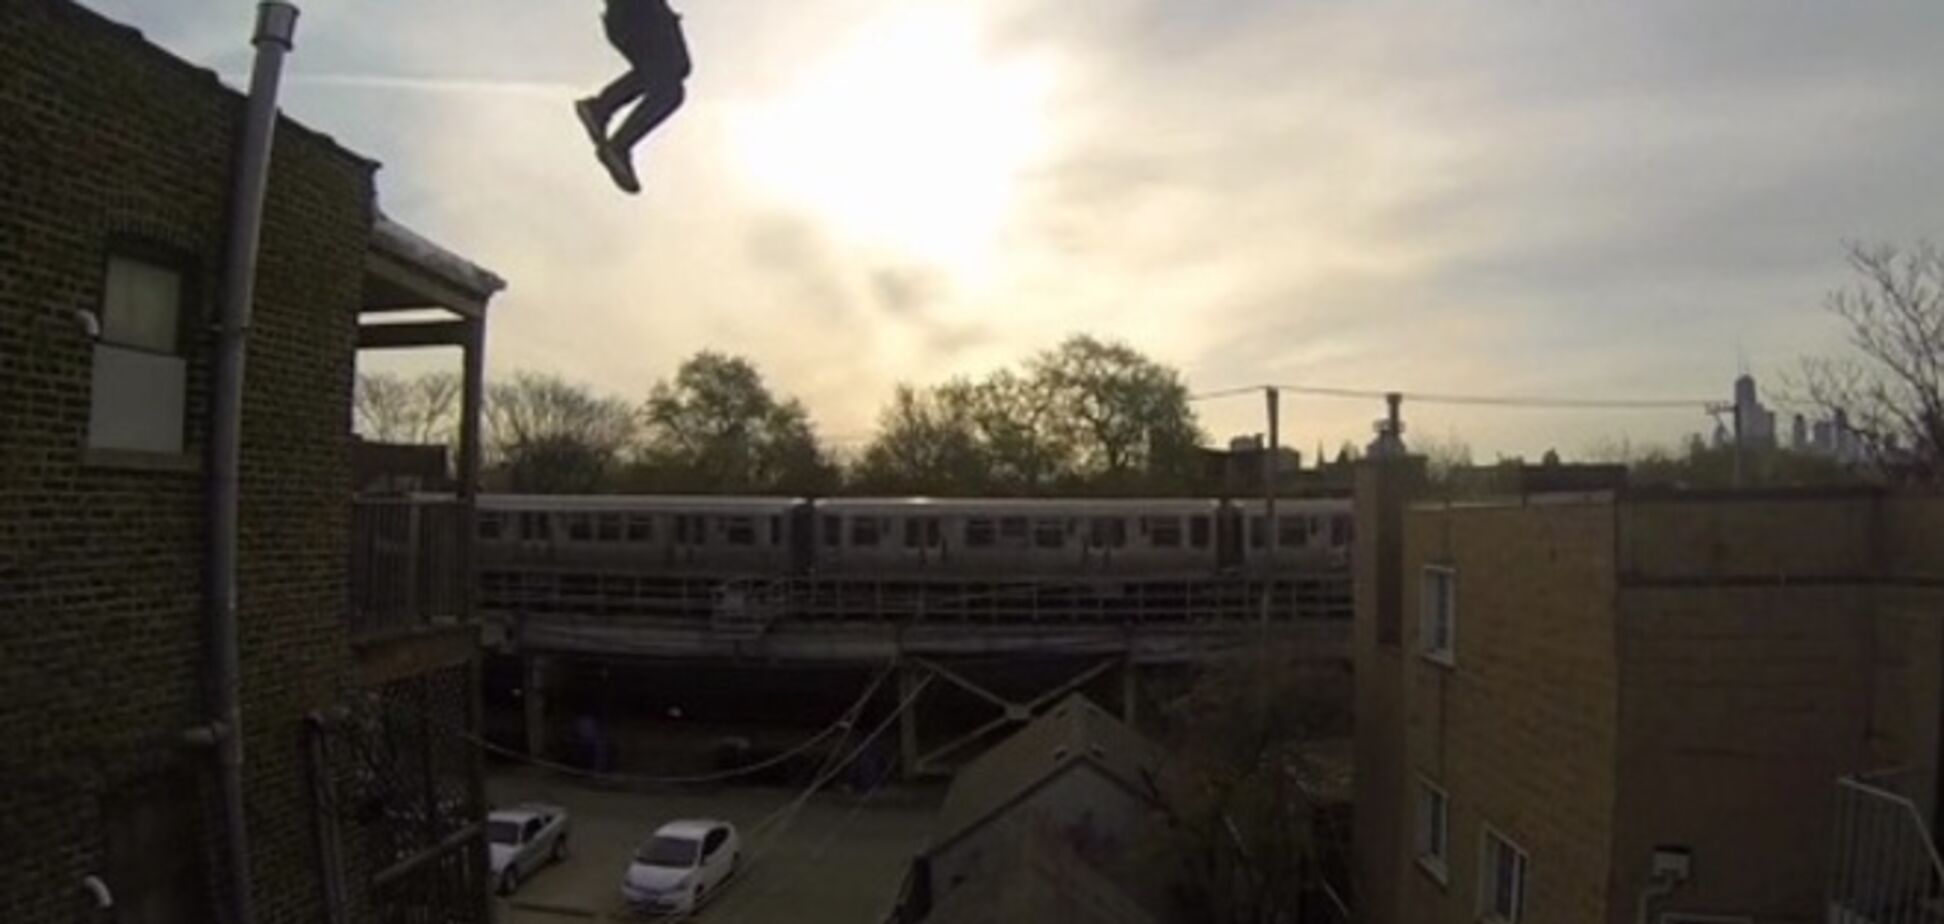 Видео прыжка жителя Чикаго с крыши стало хитом на Youtube